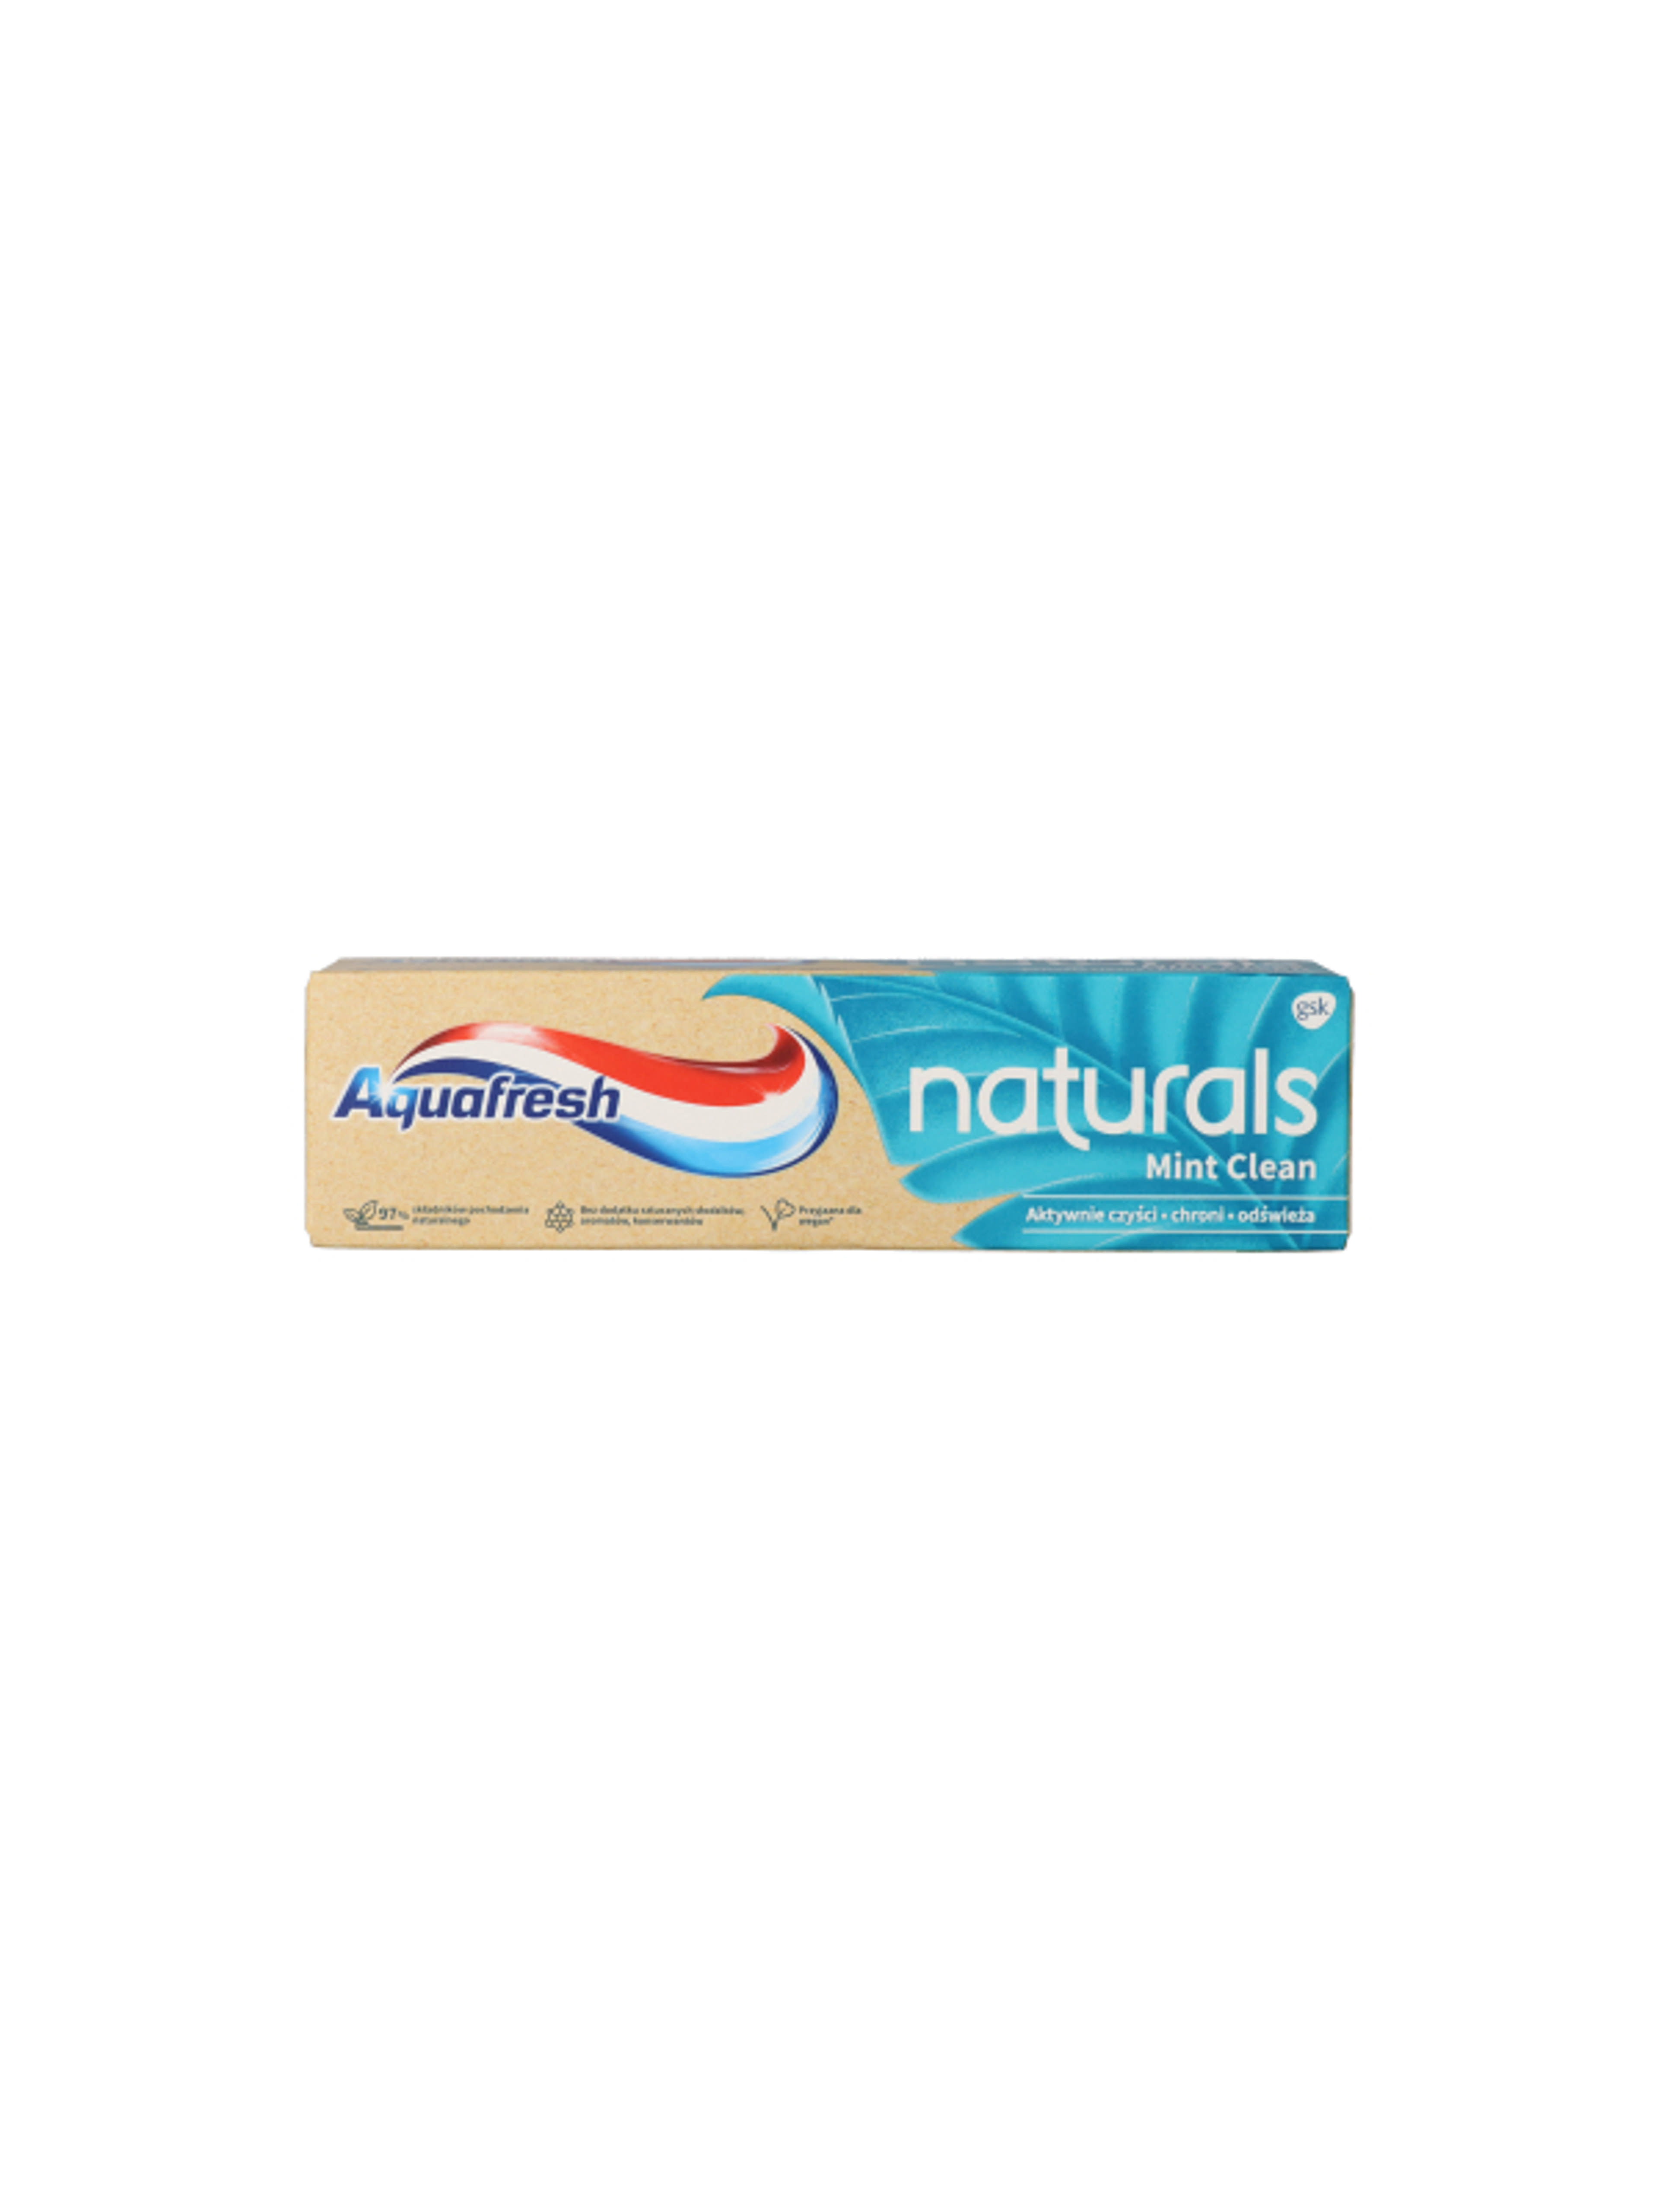 Aquafresh Naturals Mint Clean fogkrém - 75 ml-2